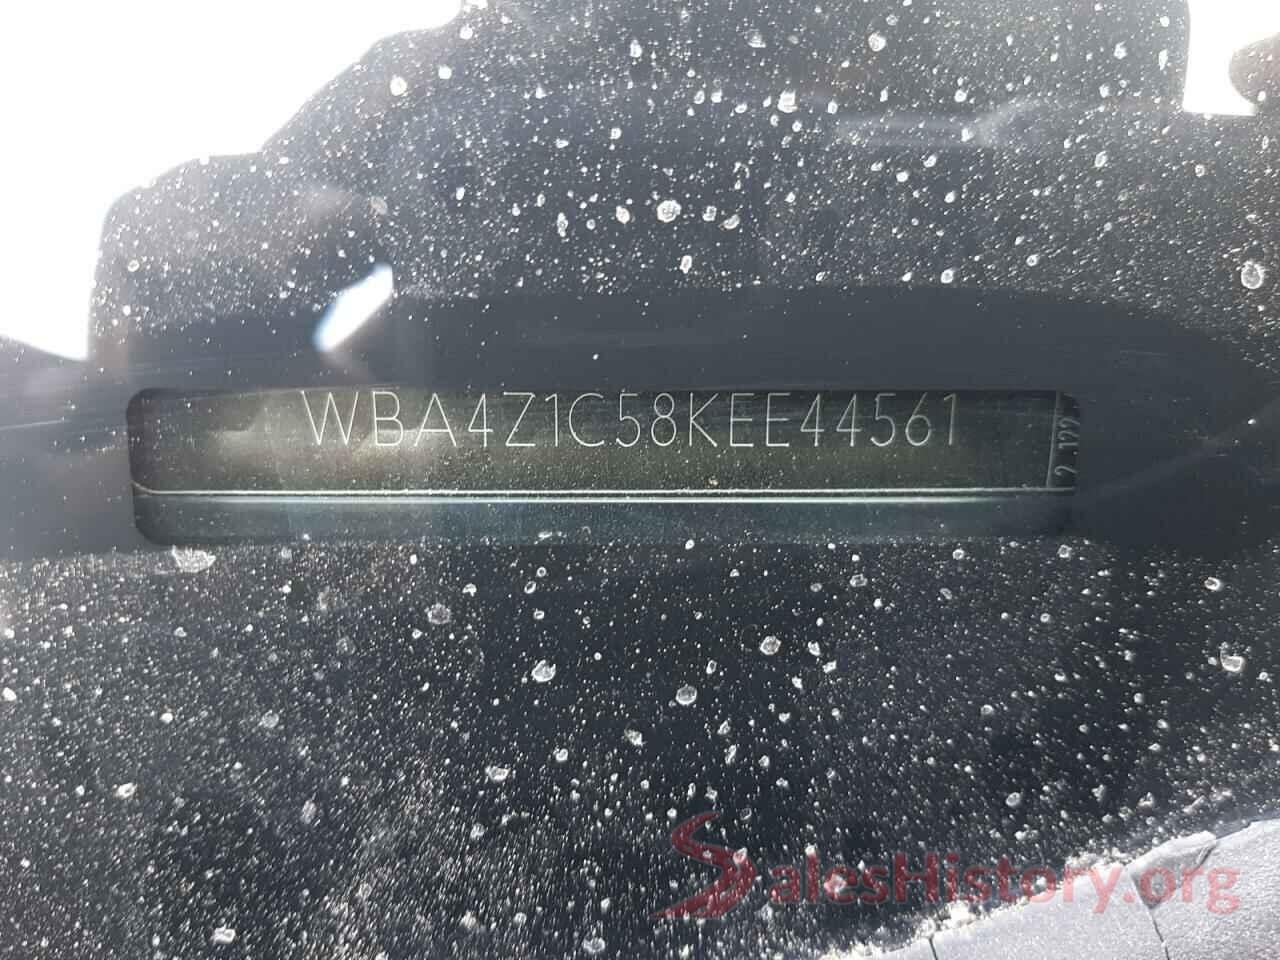 WBA4Z1C58KEE44561 2019 BMW 4 SERIES